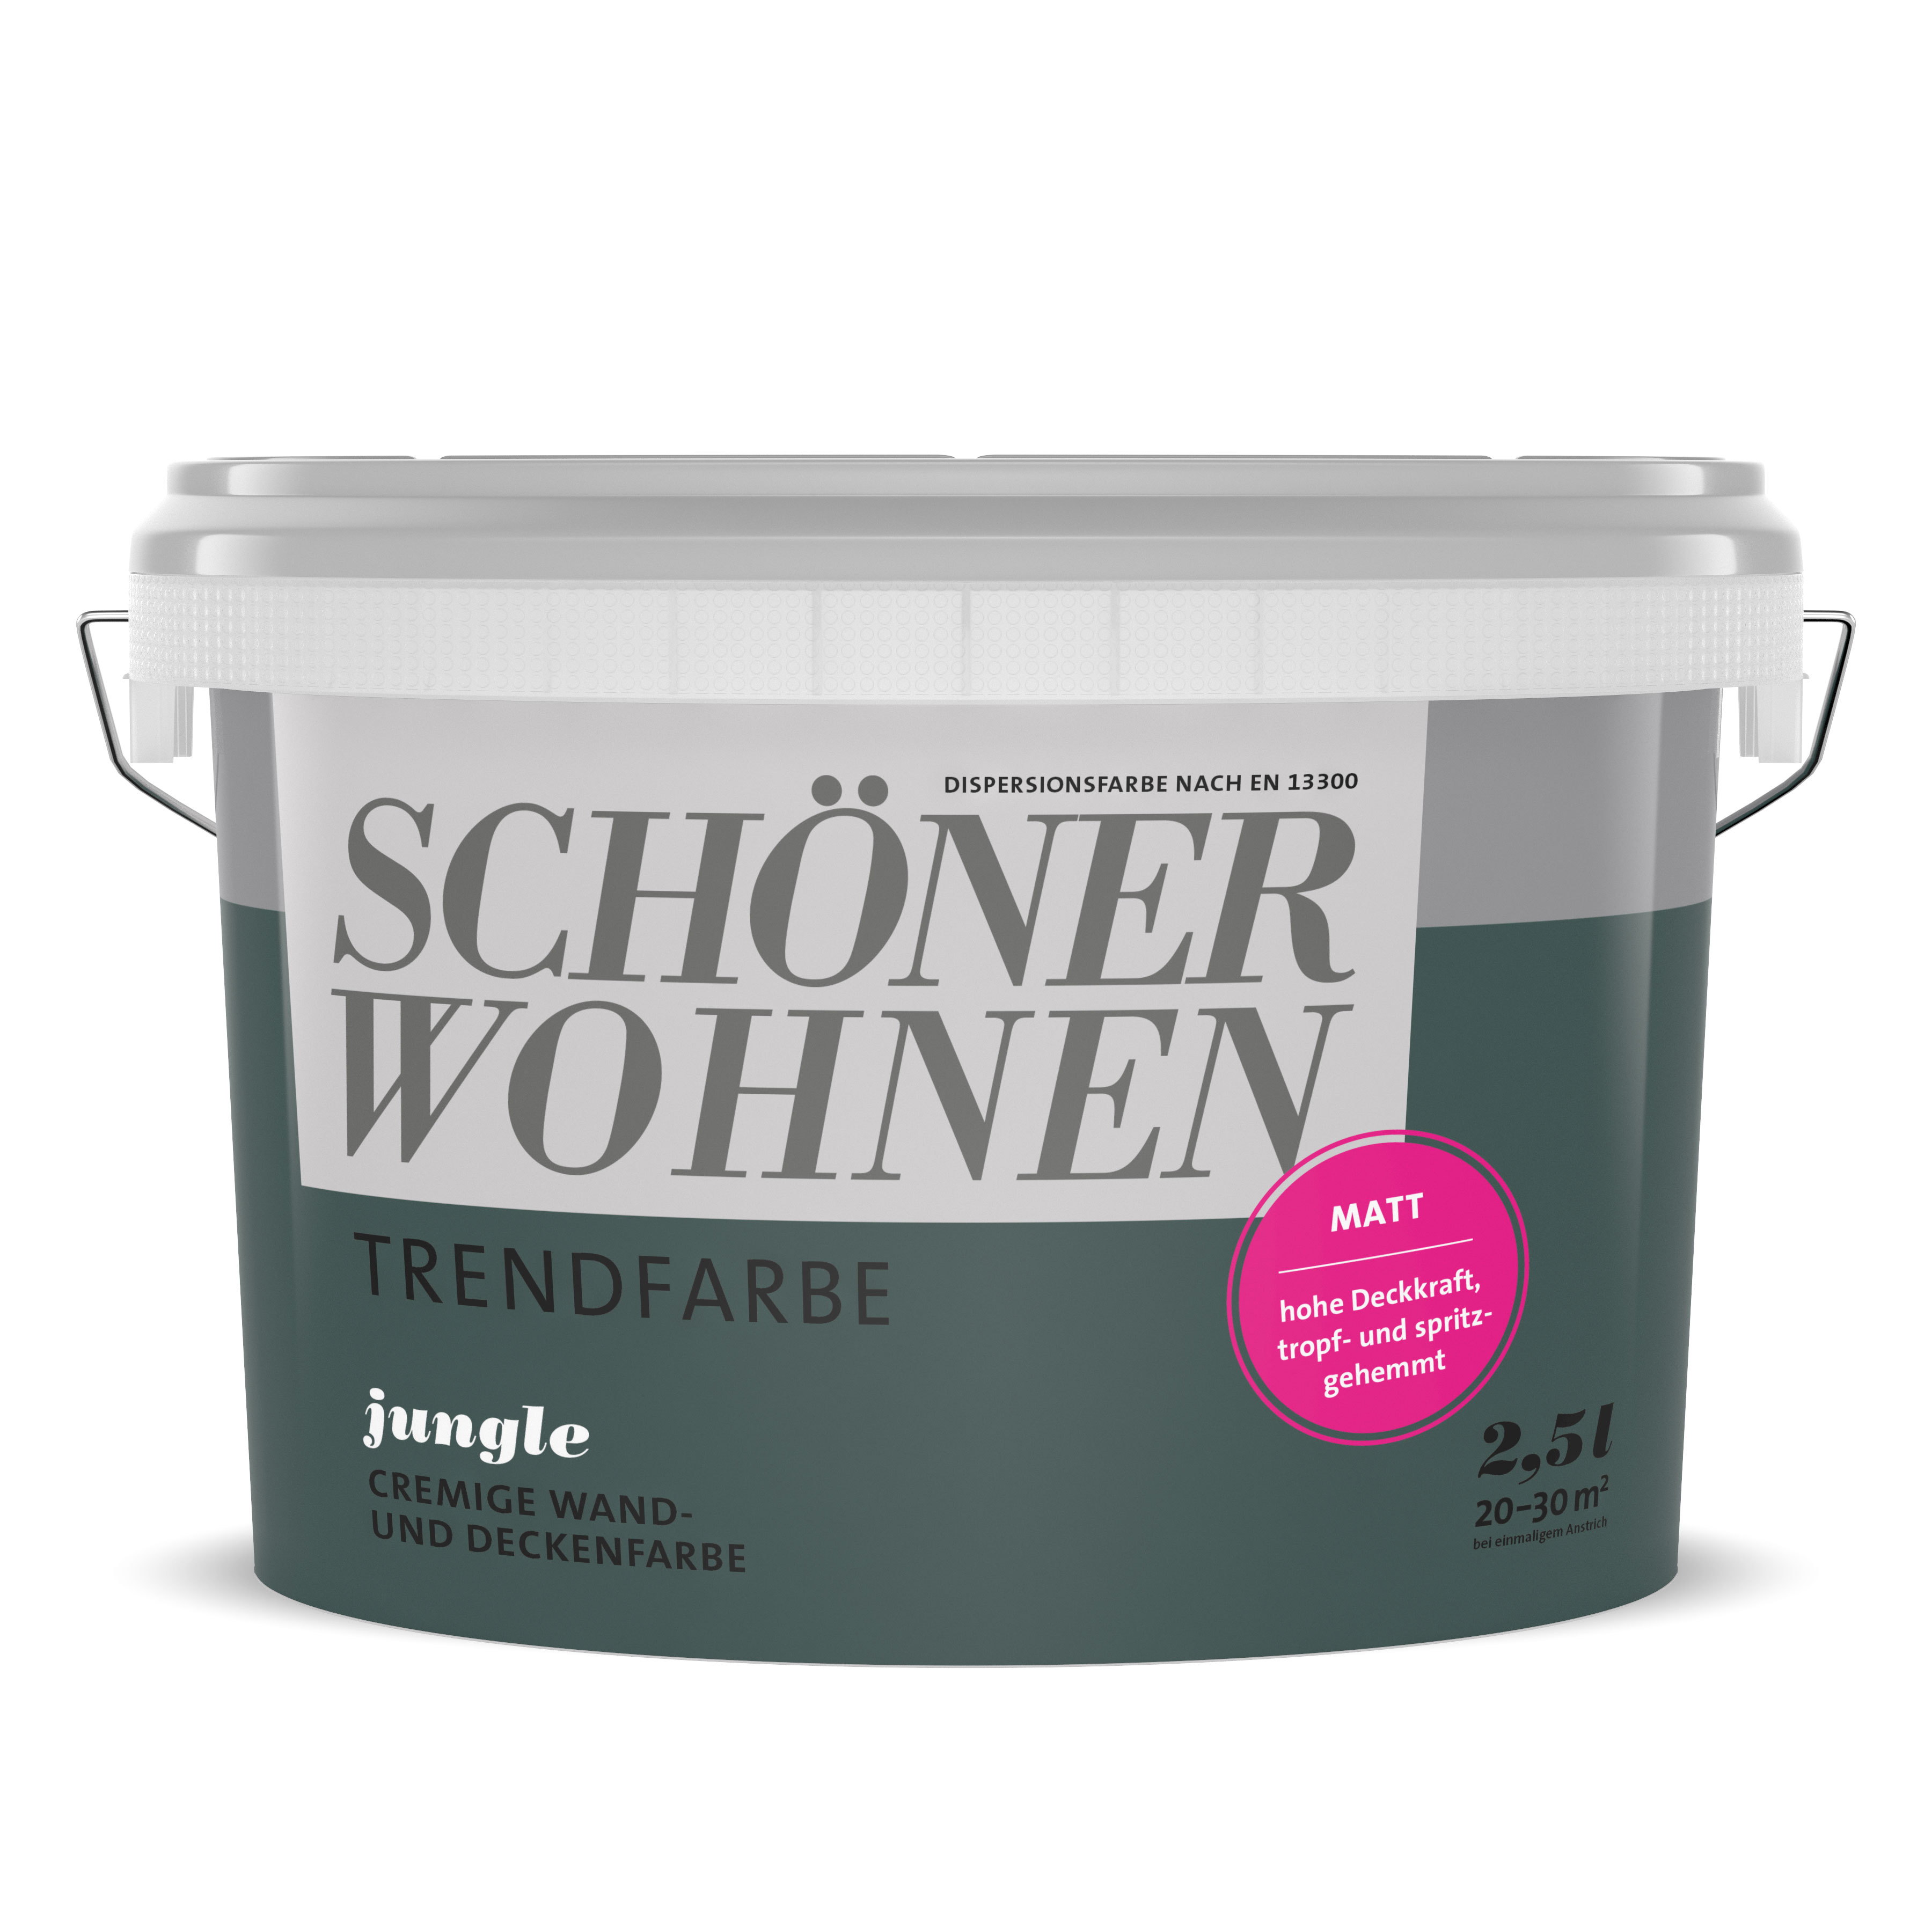 SCHÖNER-WOHEN-Farbe Trendfarbe "Jungle"